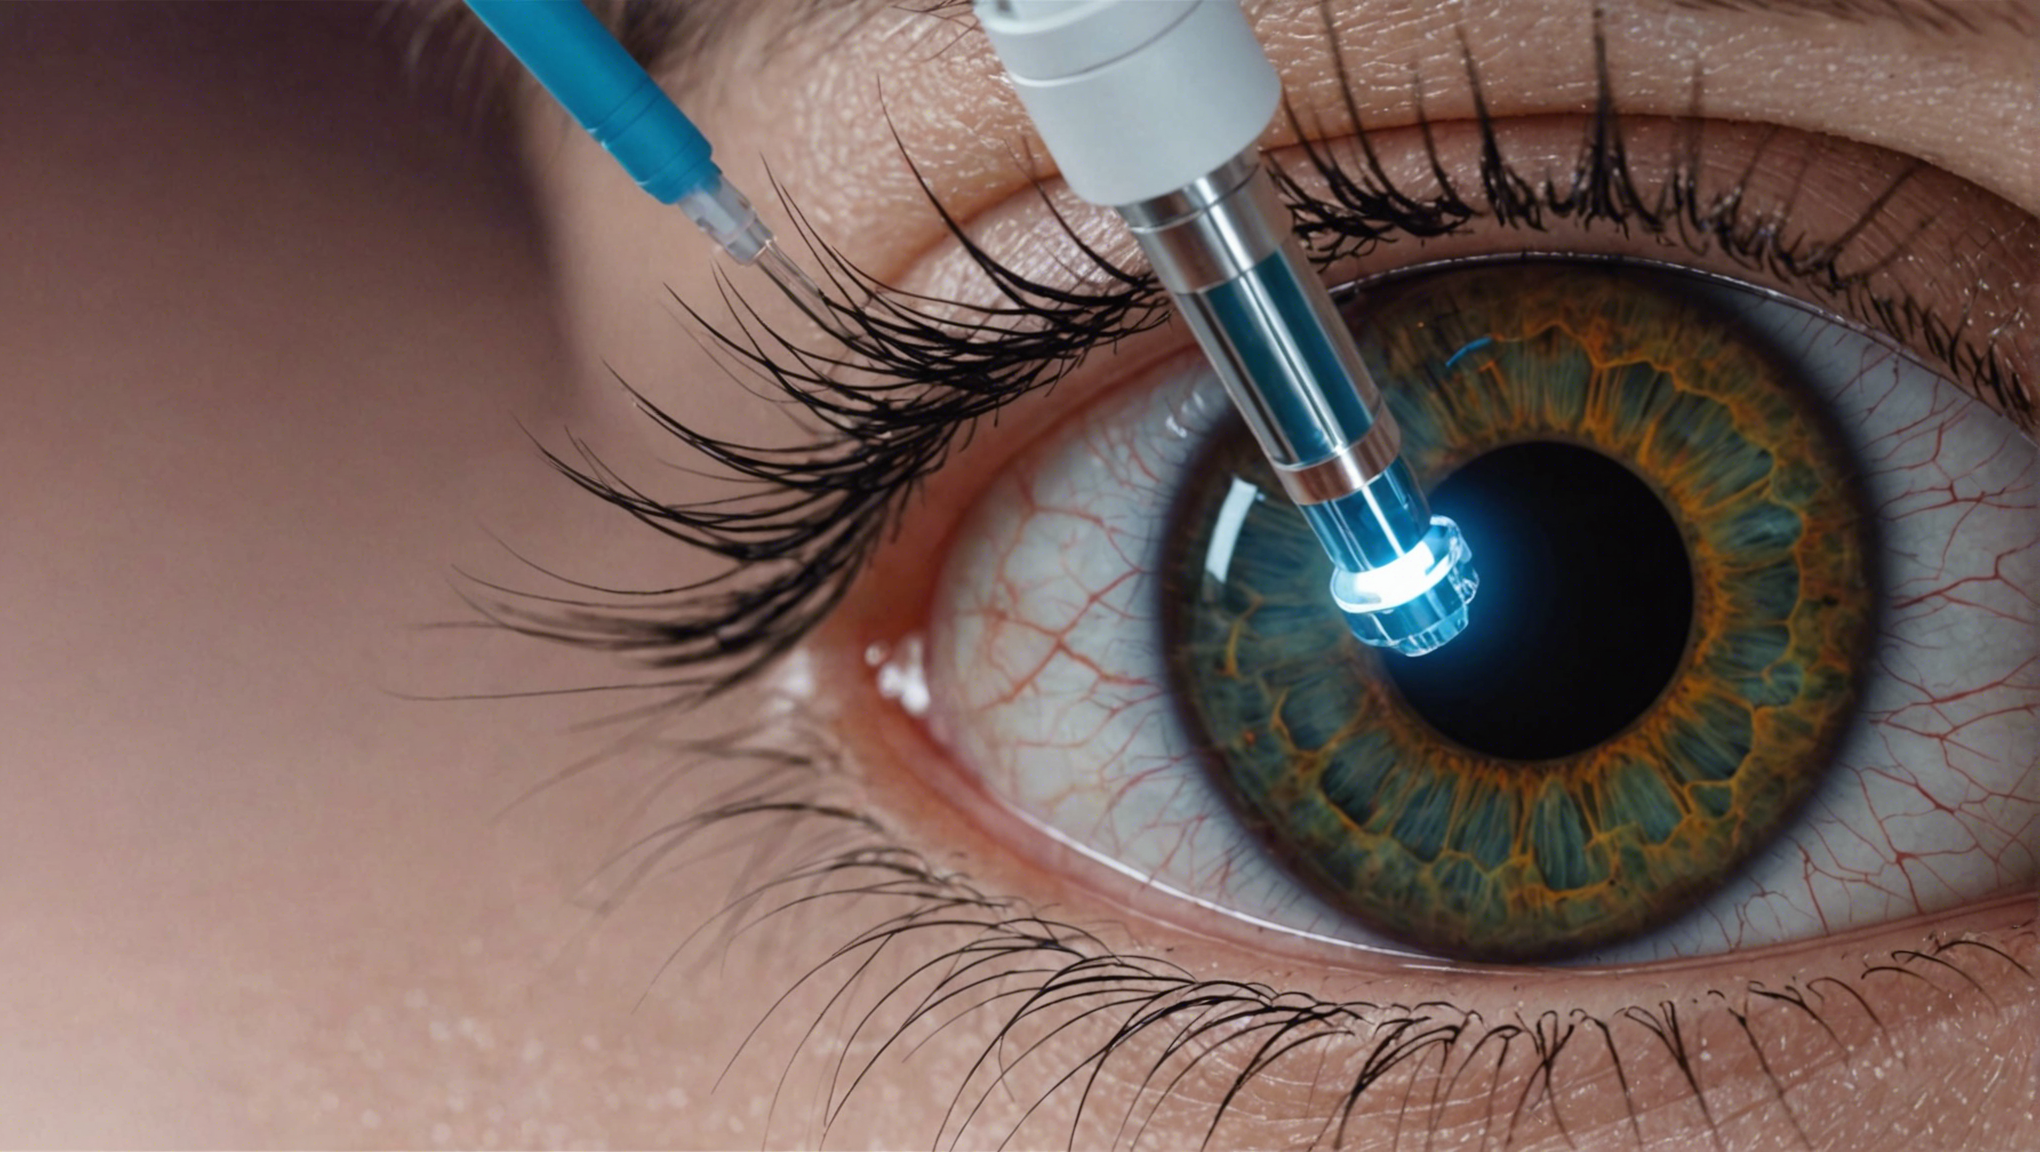 découvrez tout ce qu'il faut savoir sur l'epi-lasik (epithelial laser in situ keratomileusis) pour une correction de la vision sans douleur et avec récupération rapide.